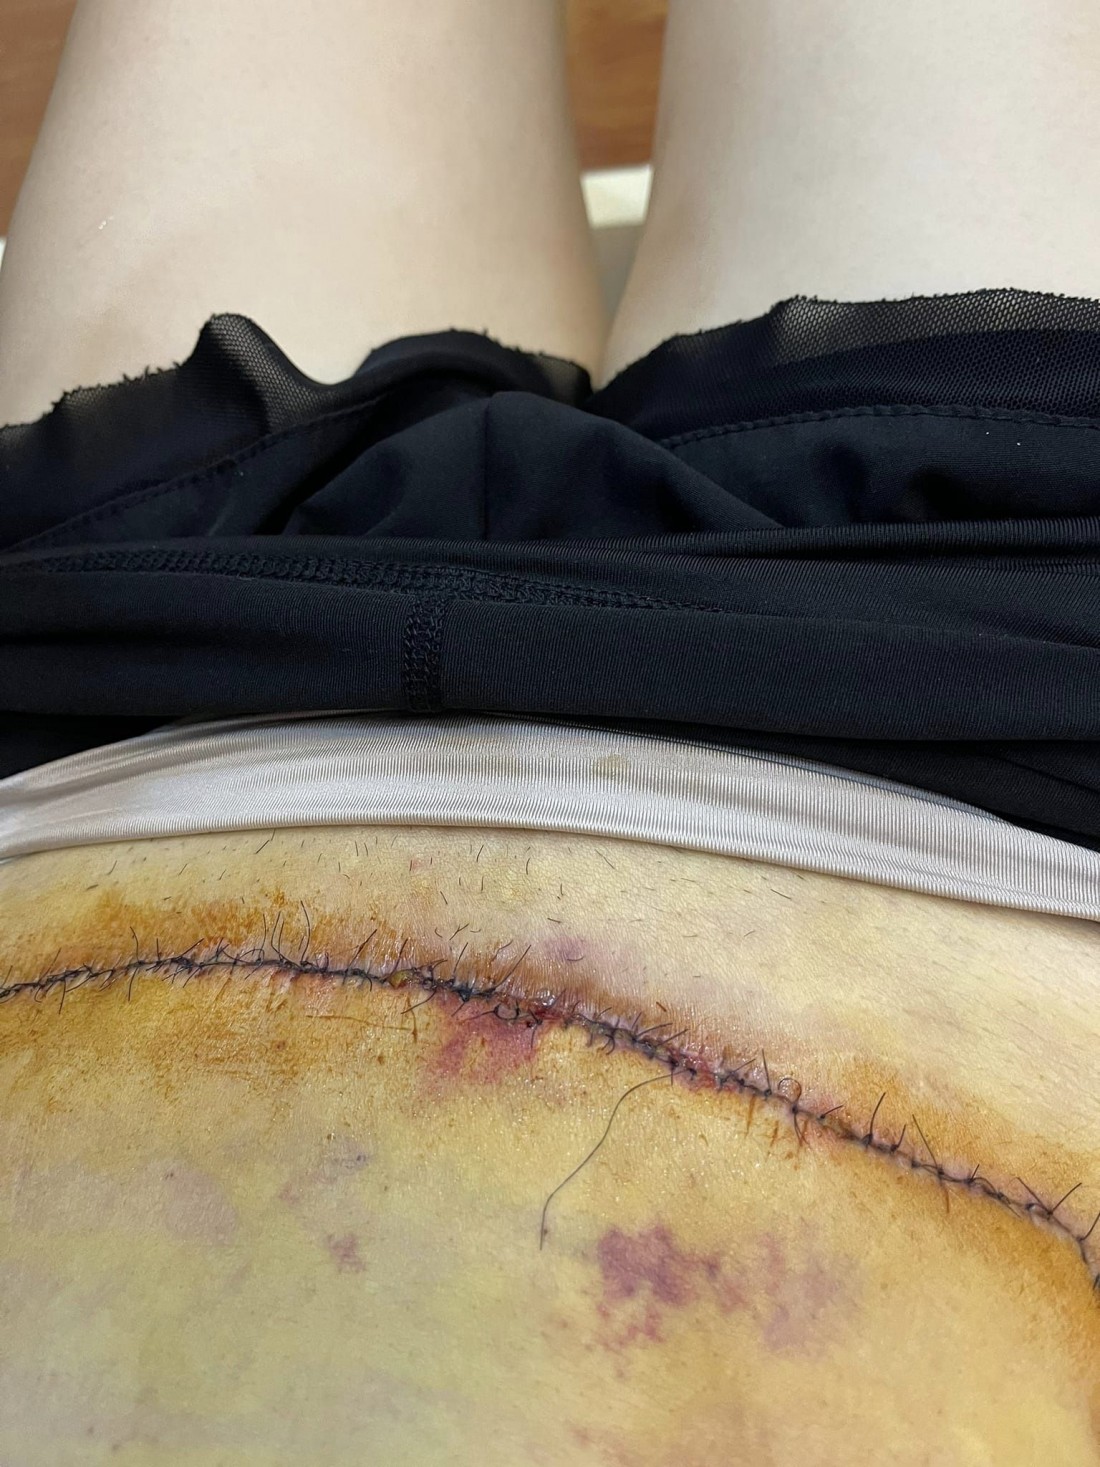 Vết mổ của nữ bệnh nhân sau khi làm phẫu thuật hút mỡ.